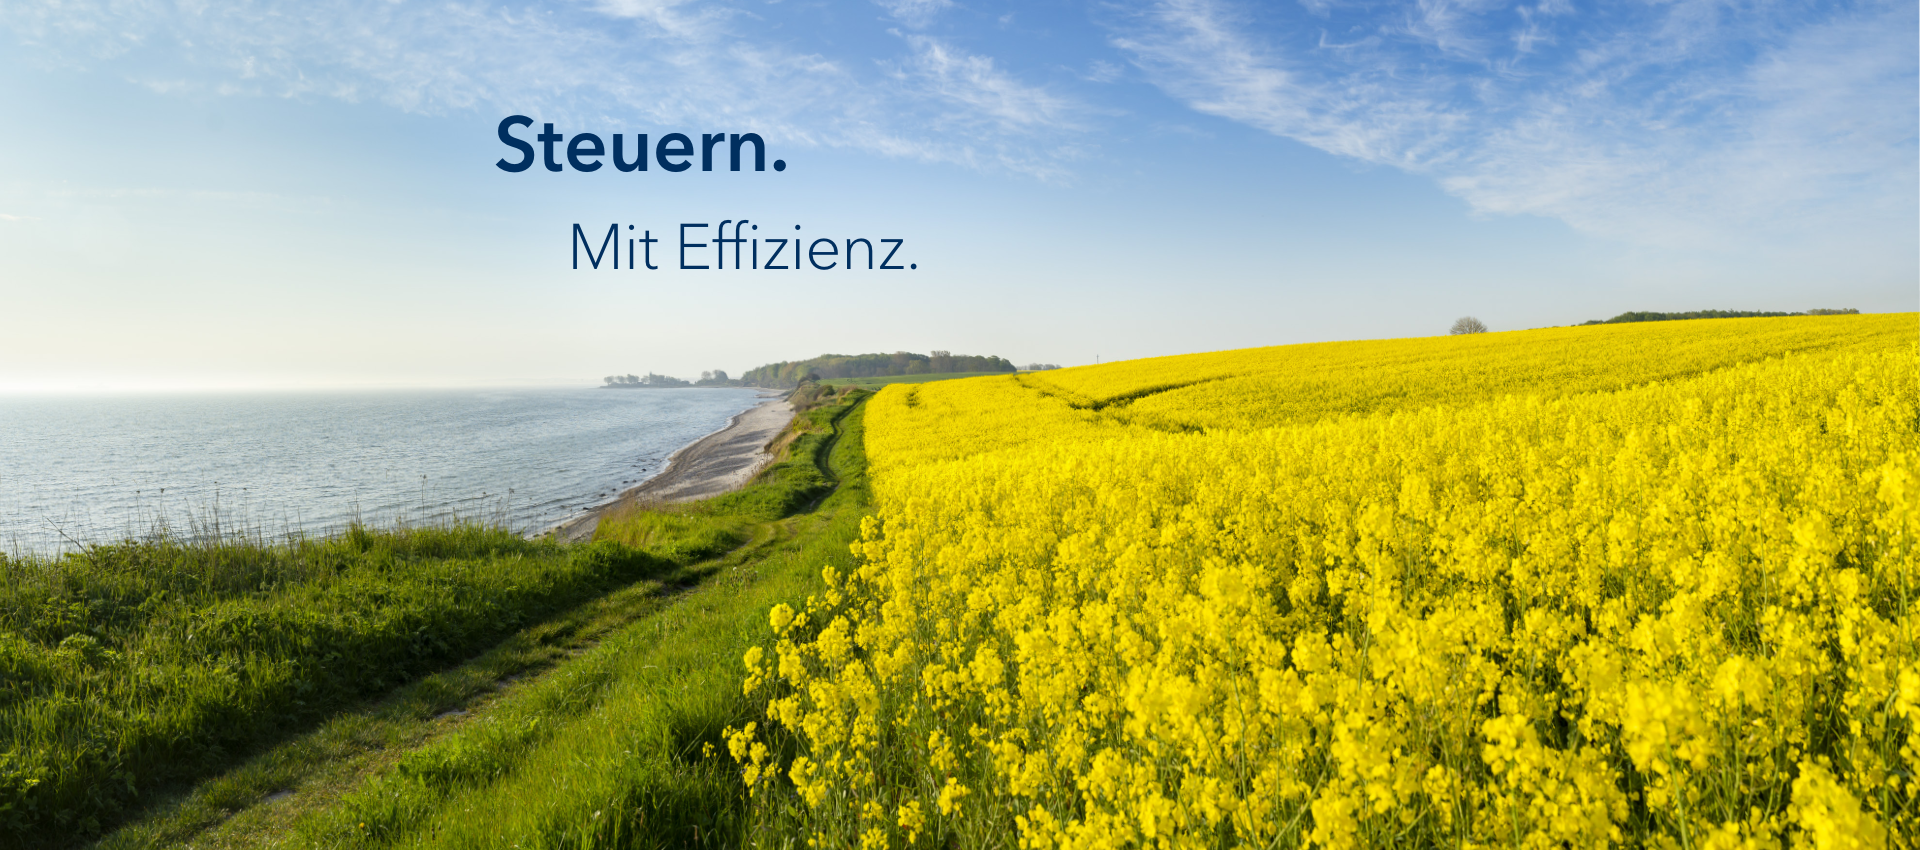 Headerbild: Schleswig-Holstein, Rapsfeld mit dem Slogan "Steuern. Mit Effizienz."